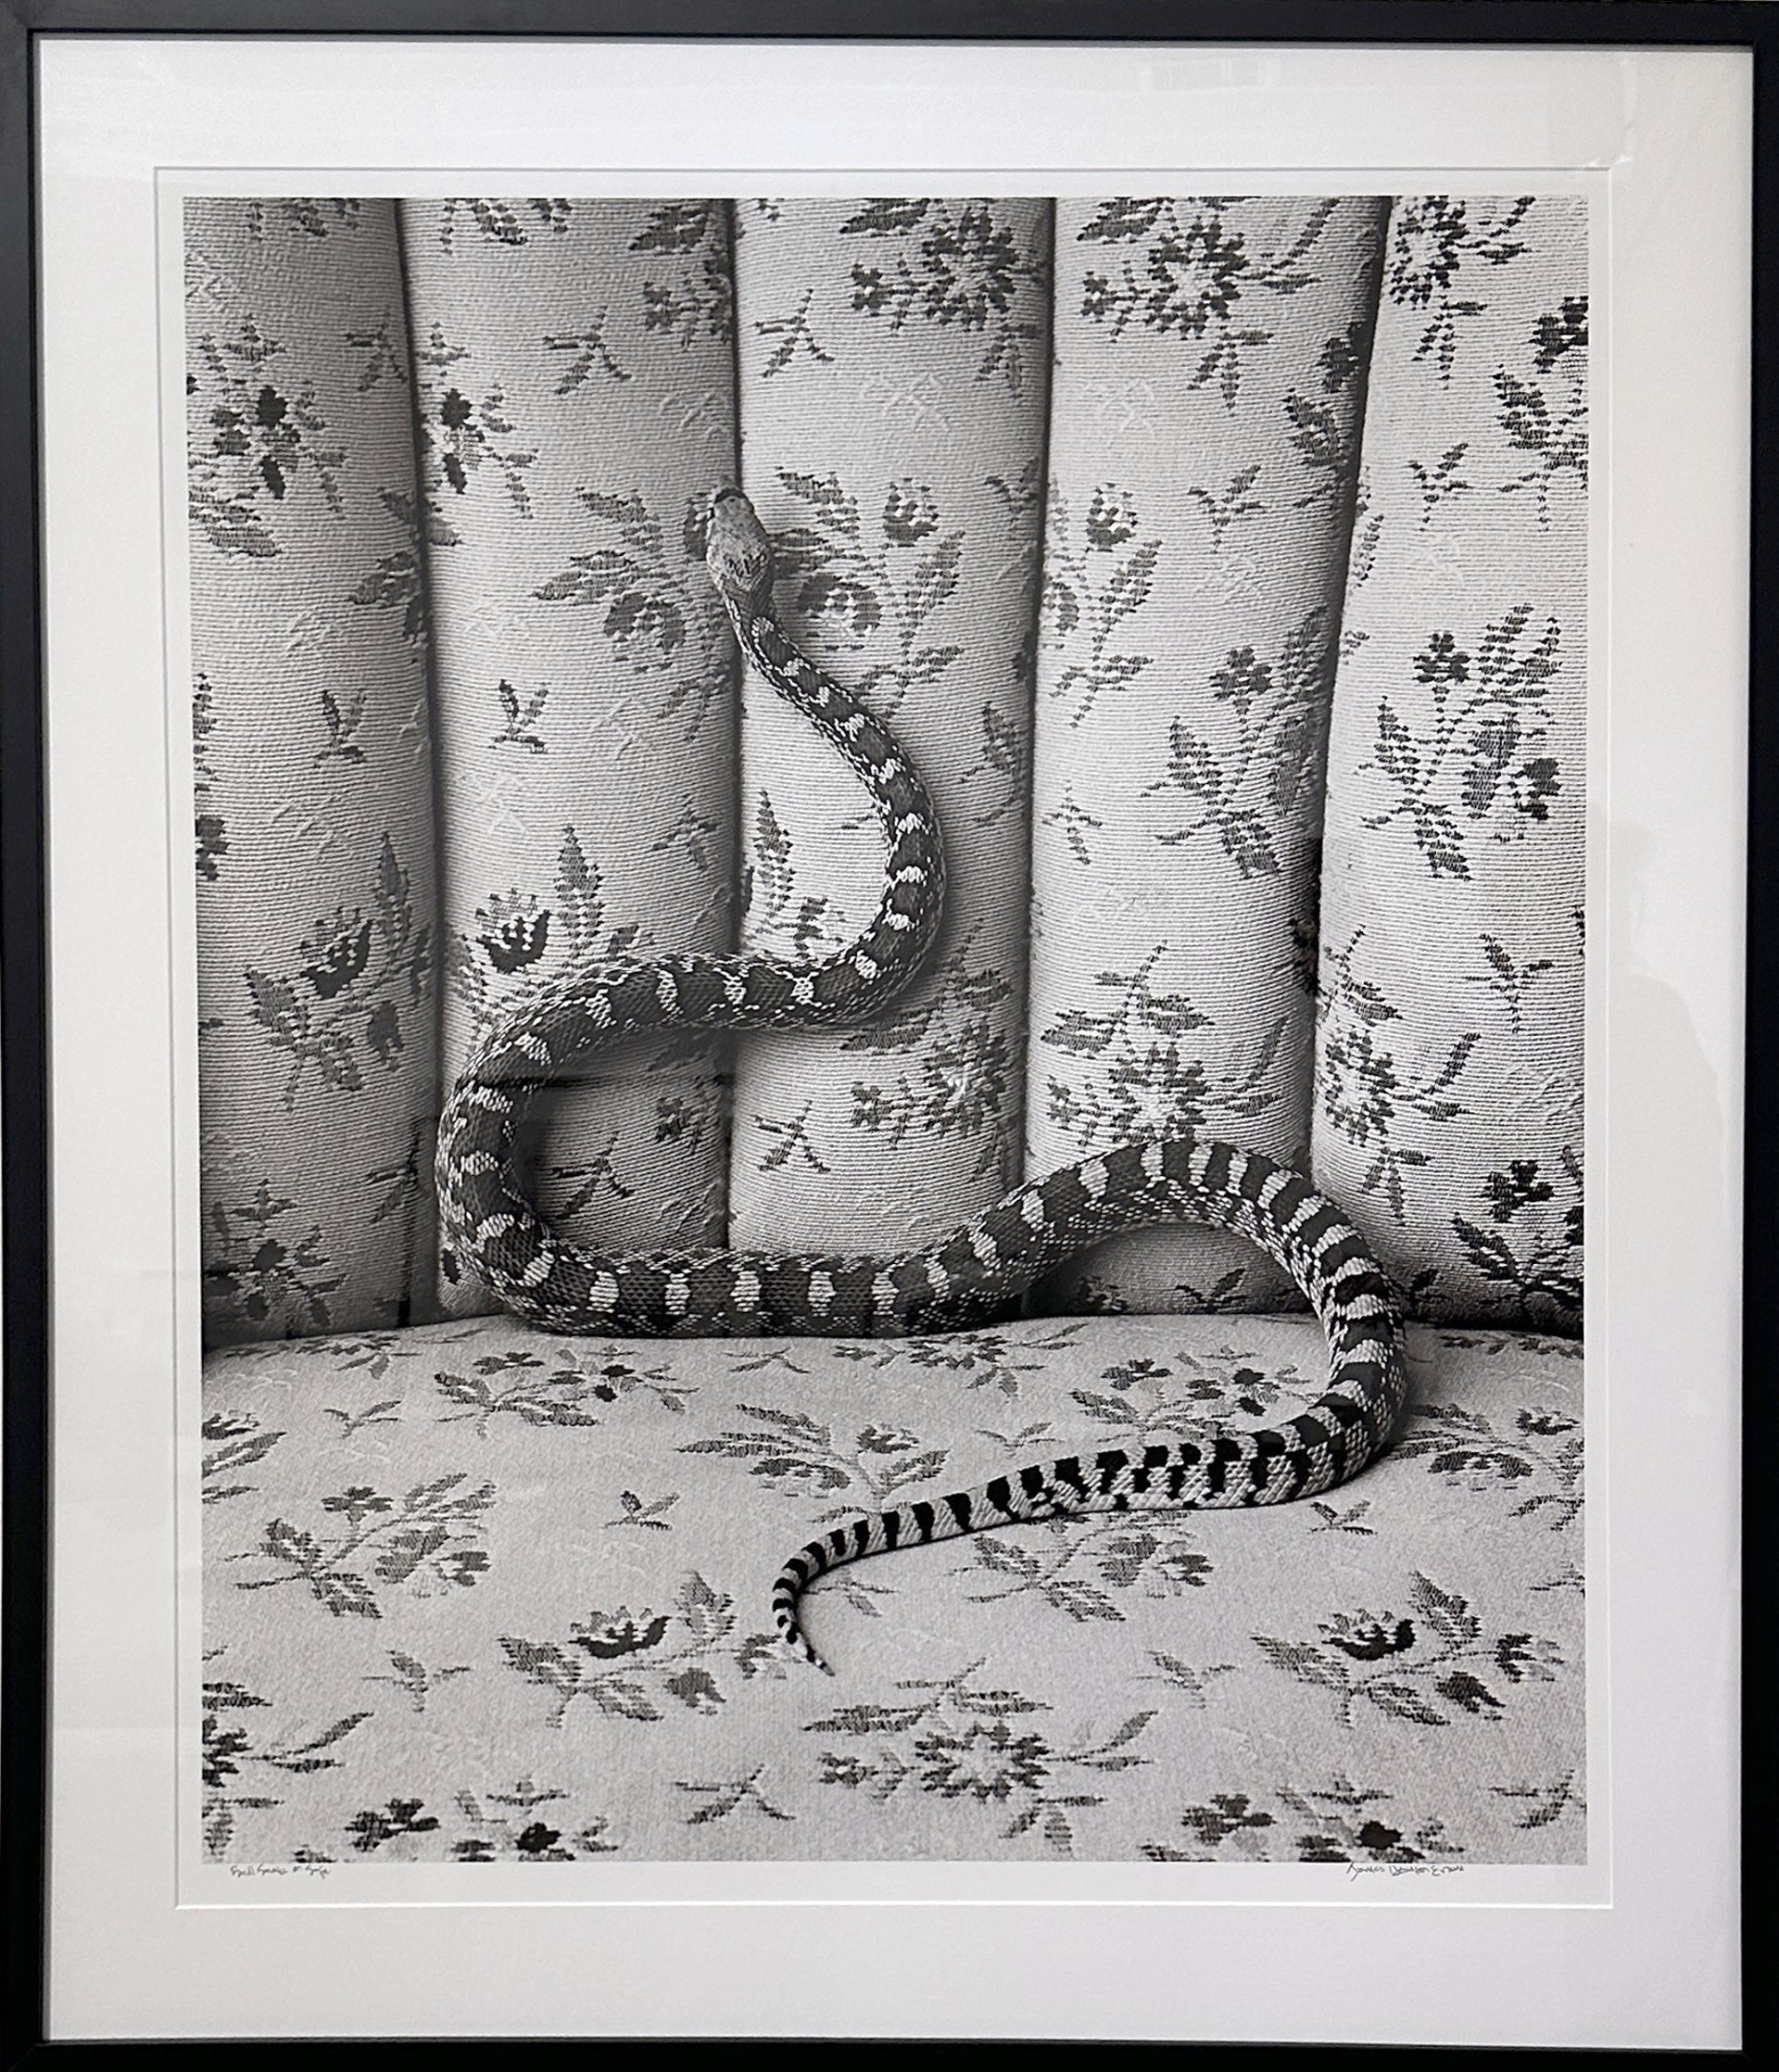 Bull Snake on Sofa by James H. Evans